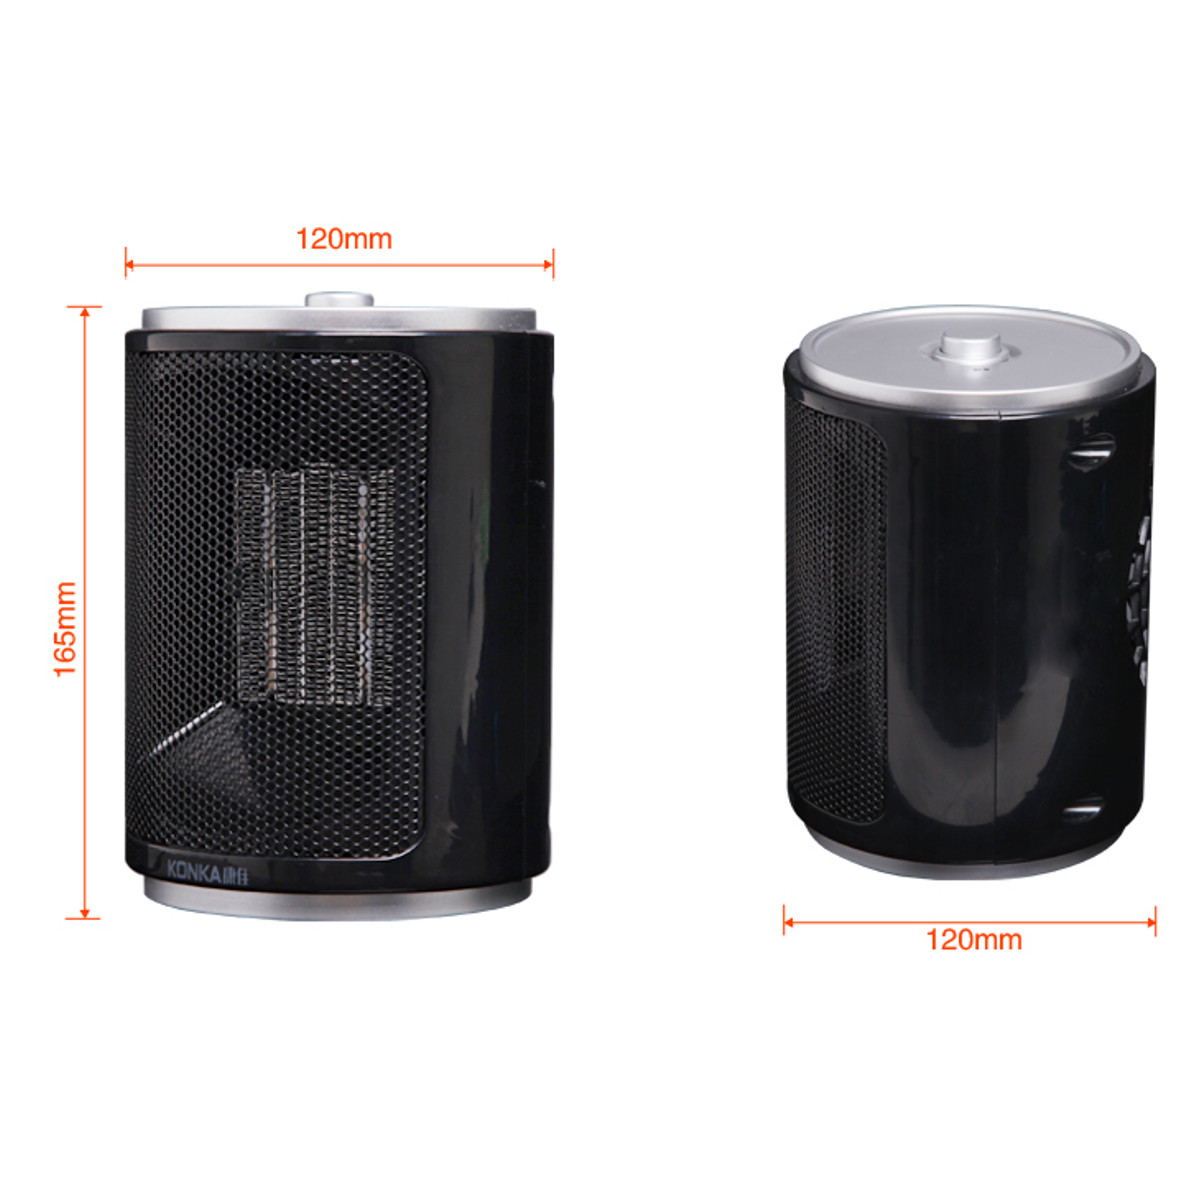 Portable-Electric-Desk-Mini-Air-Heater-Fan-Home-Warmer-Heating-Winter-Fan-1372394-6